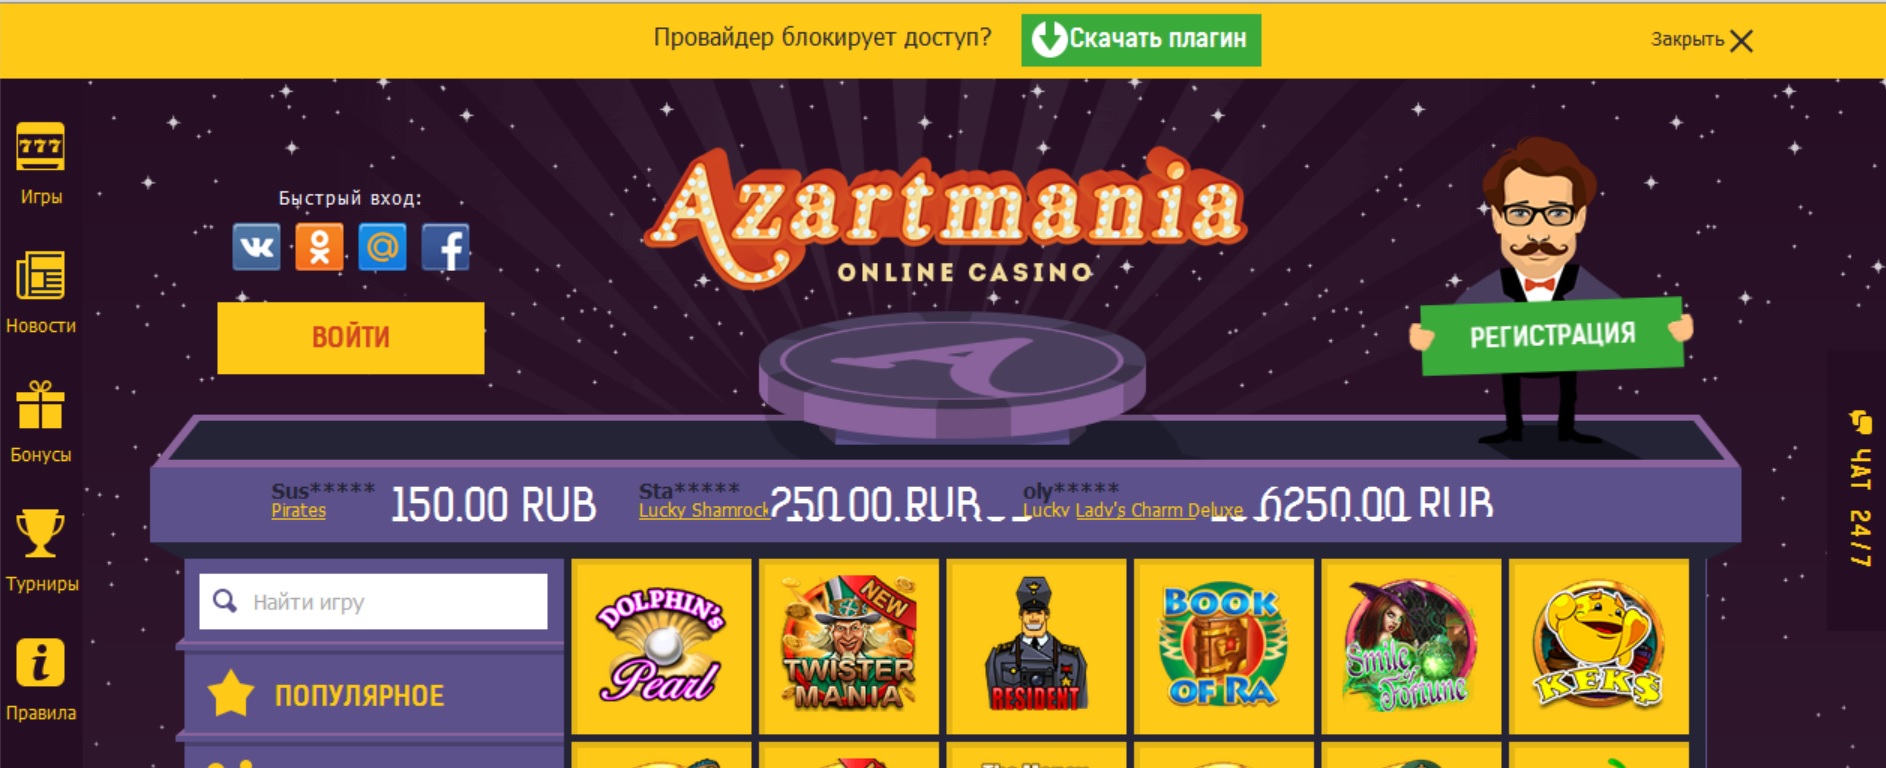 Азартмания онлайн казино